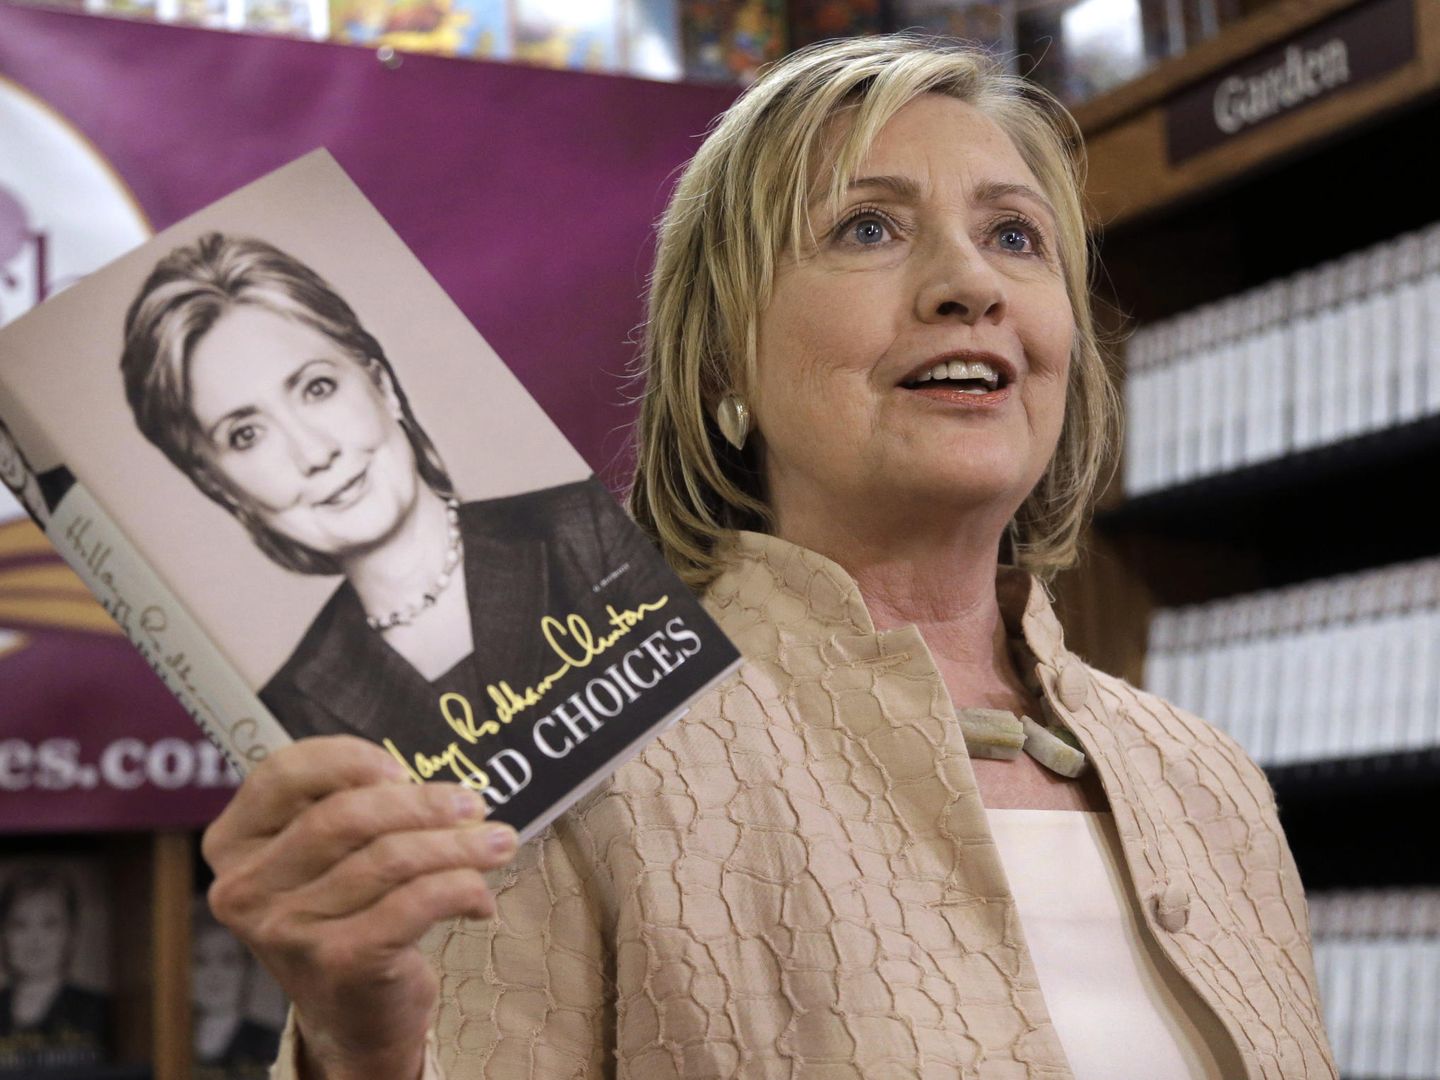 Clinton con su libro 'Decisiones difíciles'. (AP)